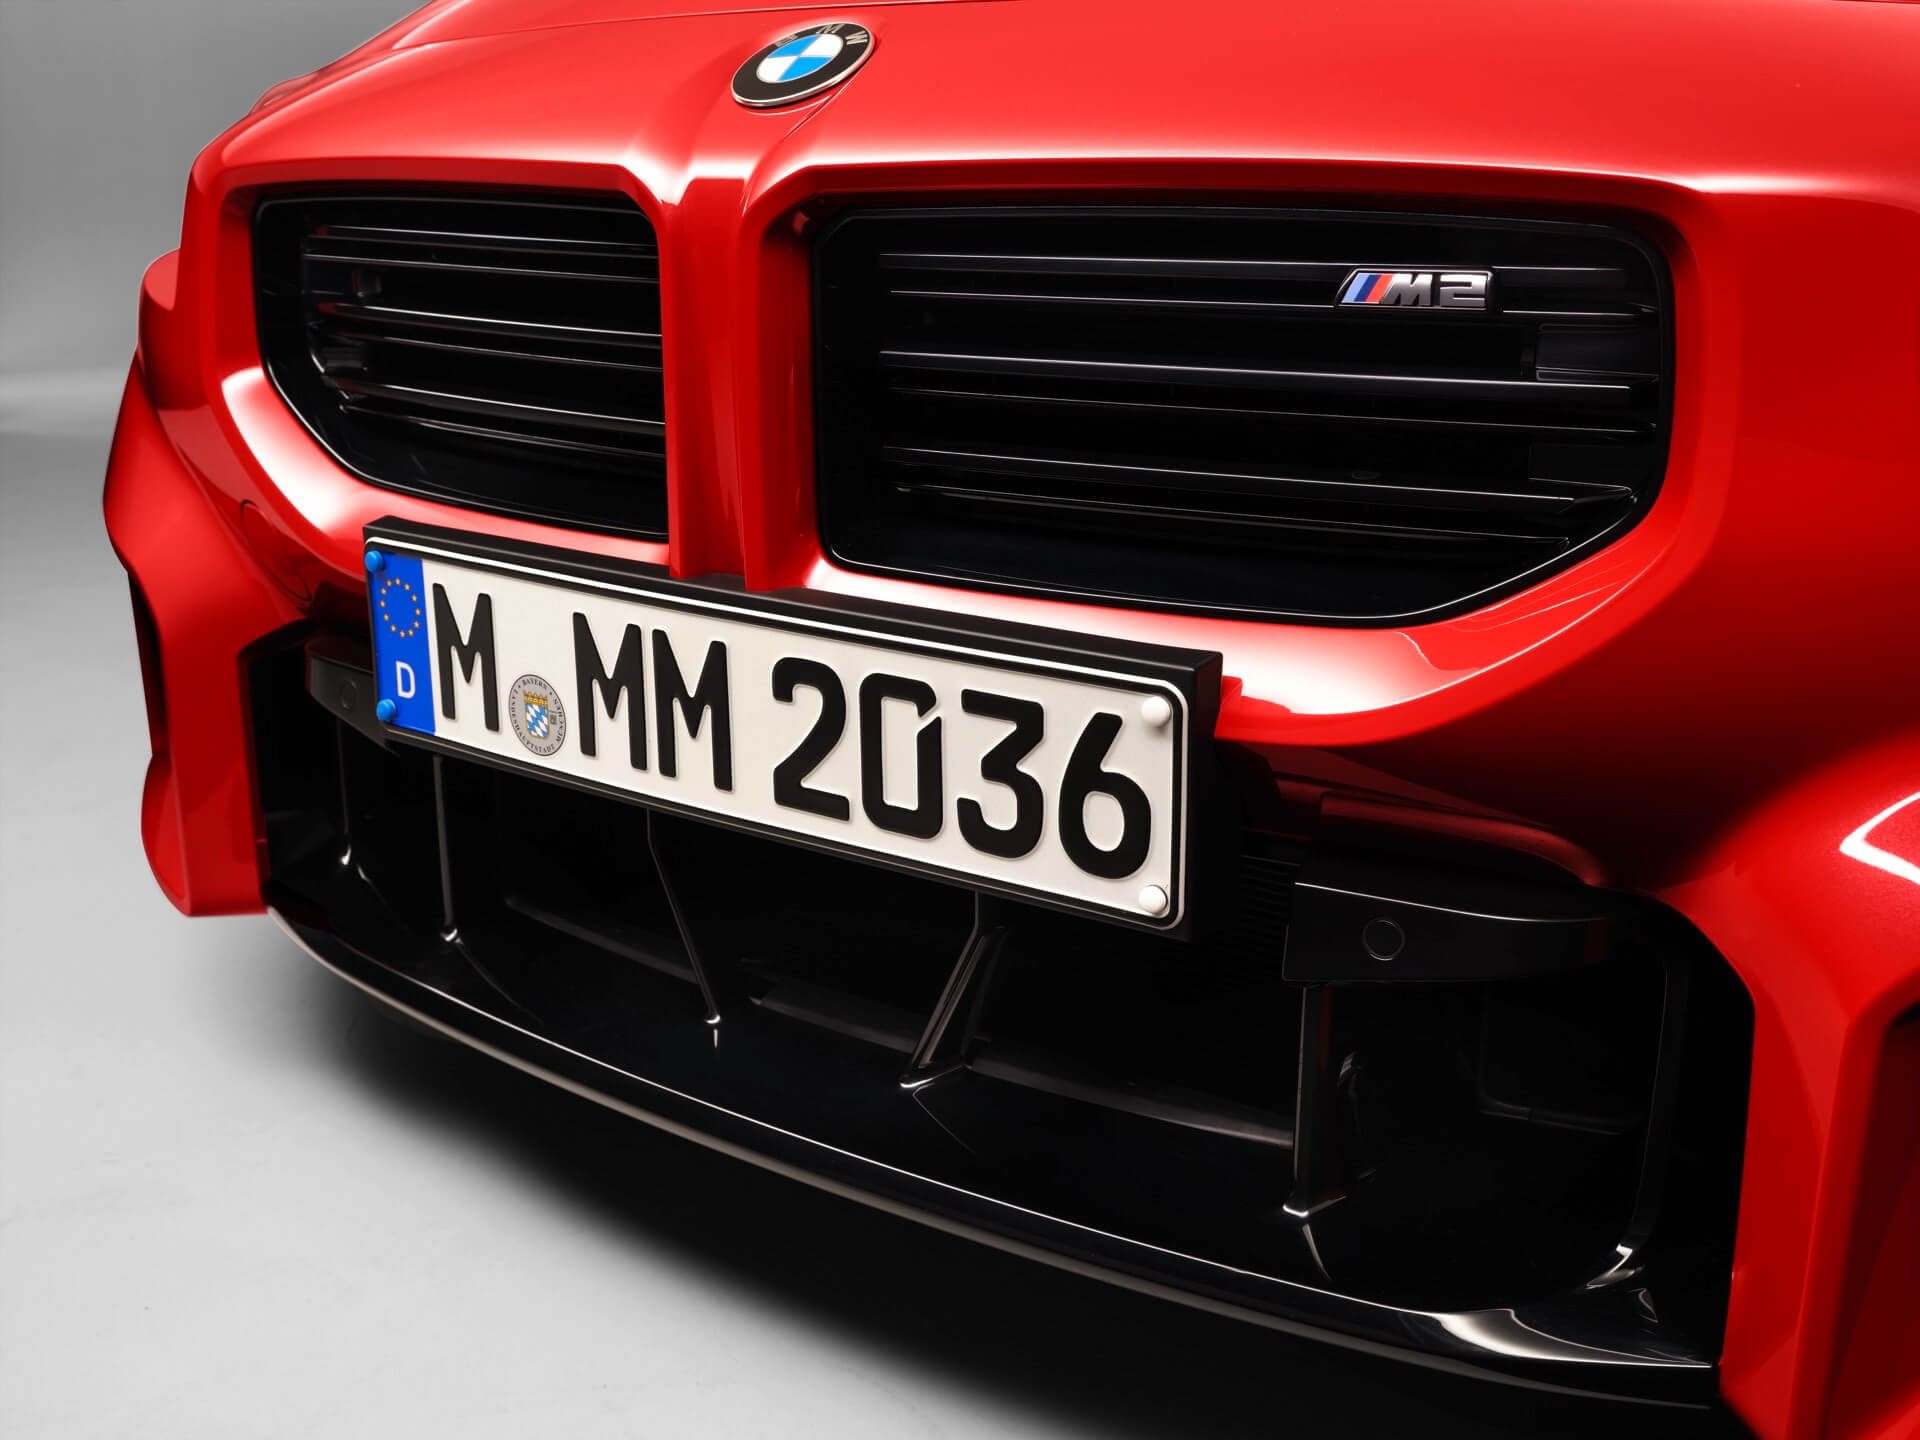 BMW M2 pormenor grelha dianteira